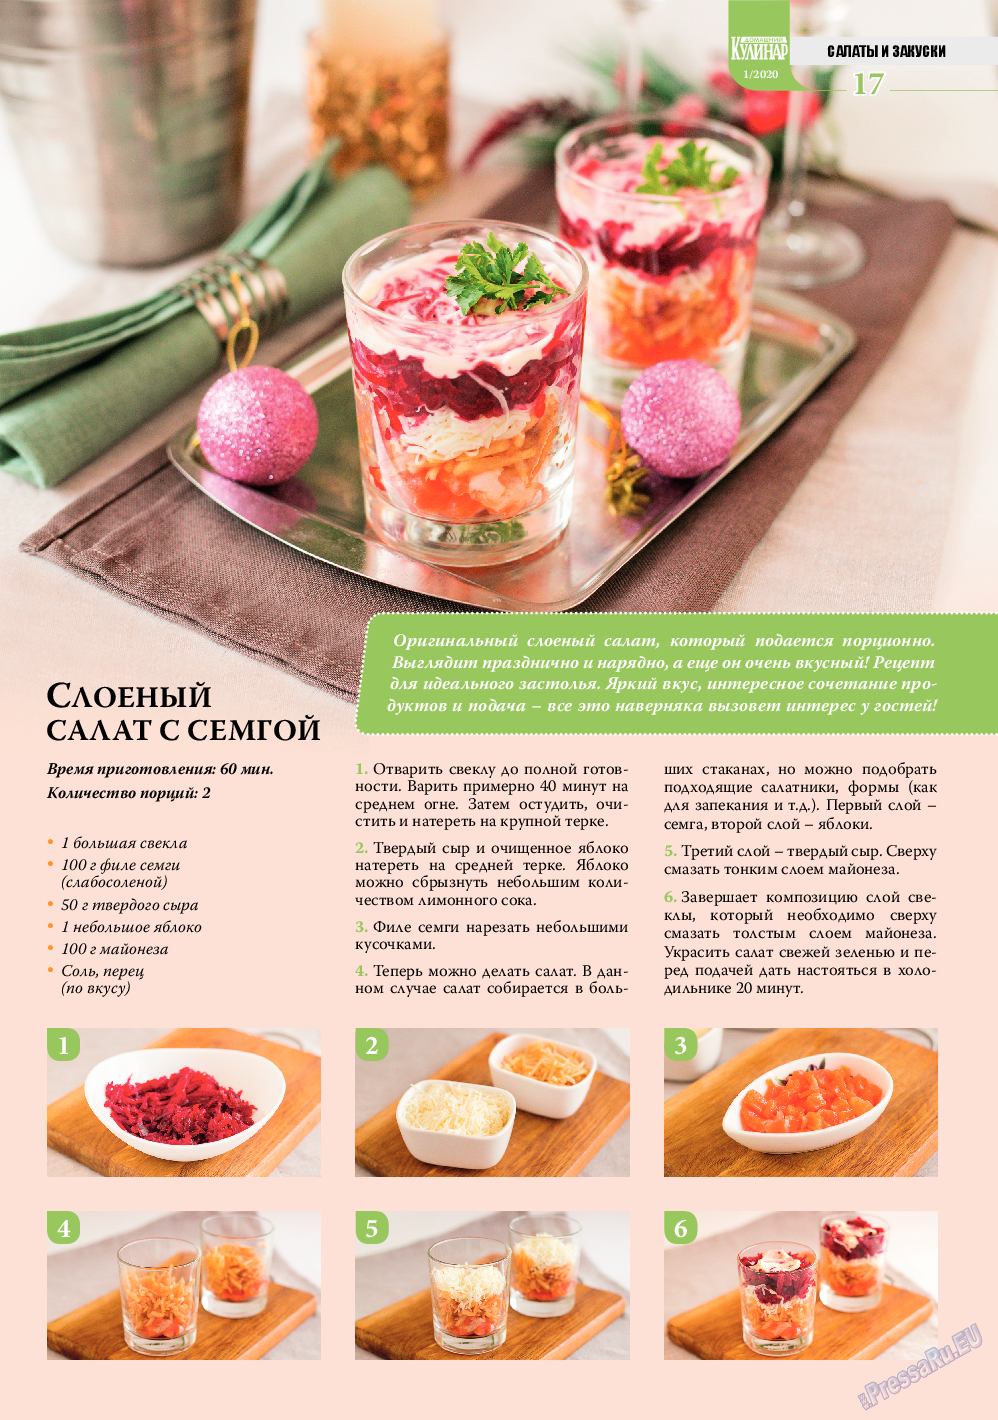 Домашний кулинар, журнал. 2020 №1 стр.17